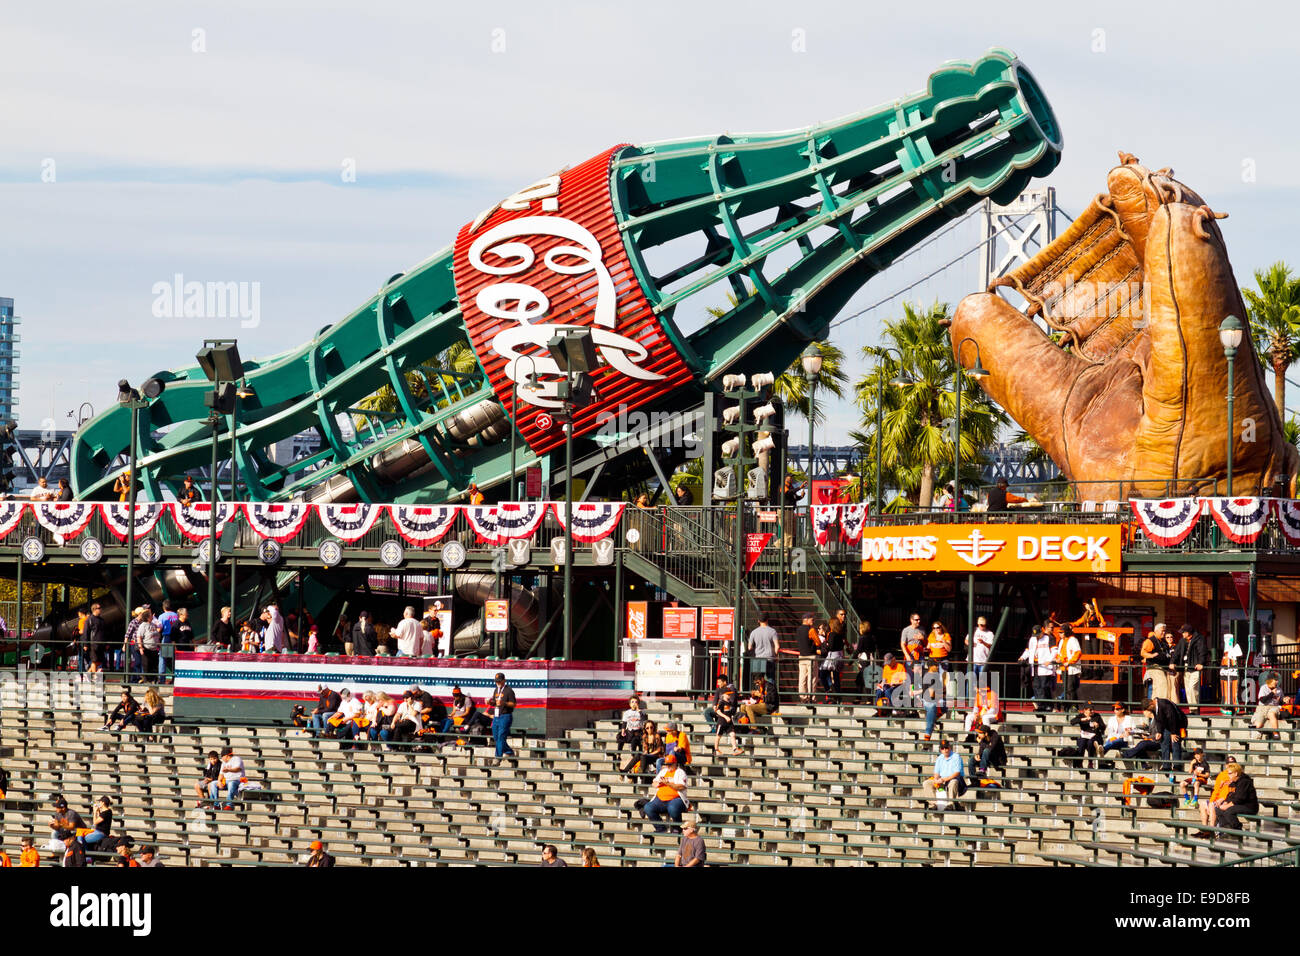 Linken Feld steht, zeigen riesige Coca Colaflasche und Handschuh im AT&T Park, Heimat der San Francisco Giants Baseballteam Stockfoto